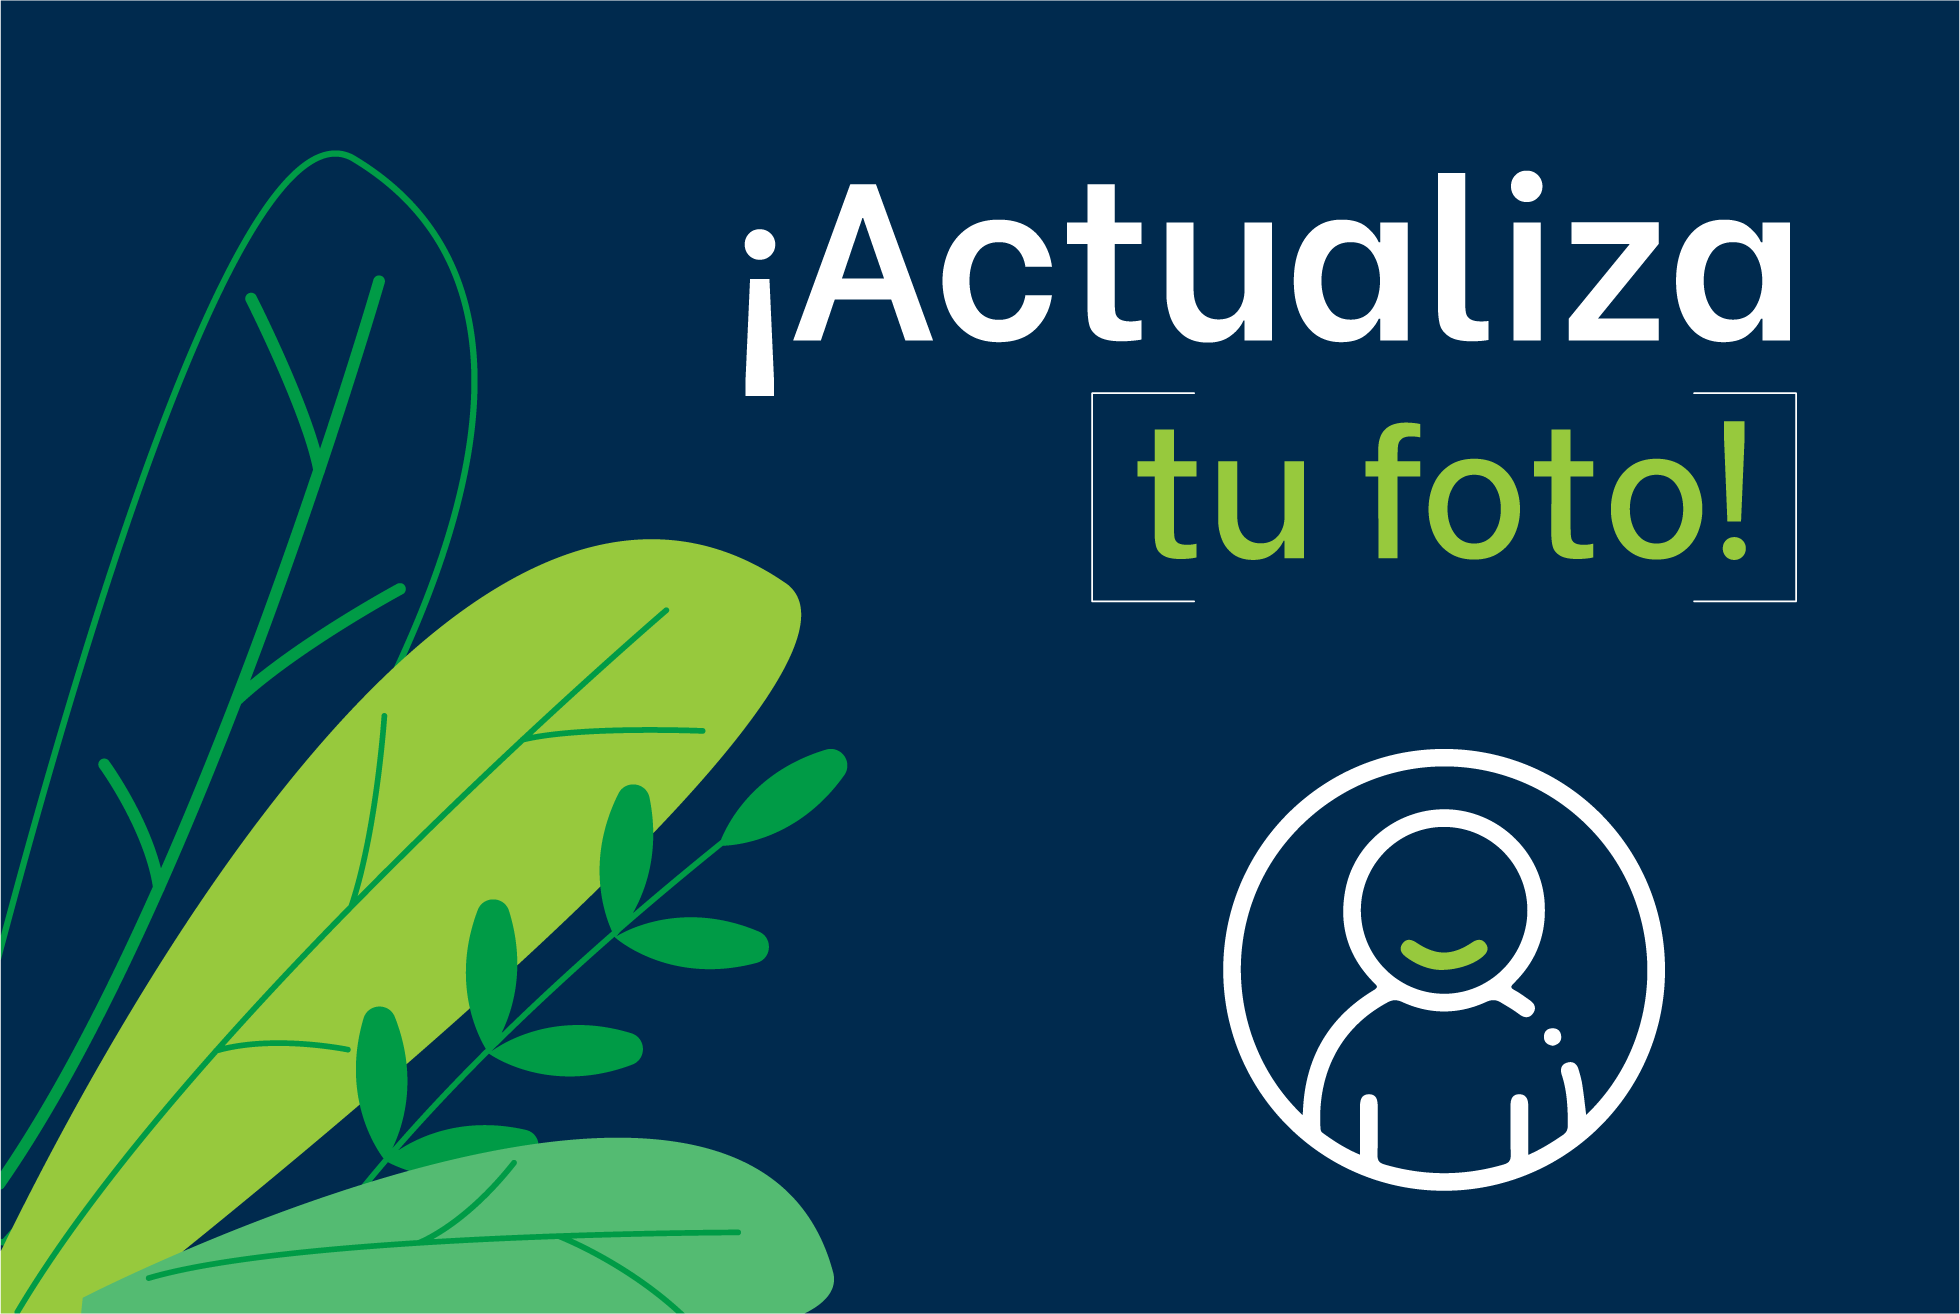 Gráfico con texto "¡actualiza tu foto!" en blanco sobre un fondo azul oscuro, con hojas verdes estilizadas y un ícono de una persona dentro de una lupa con fines de marketing.